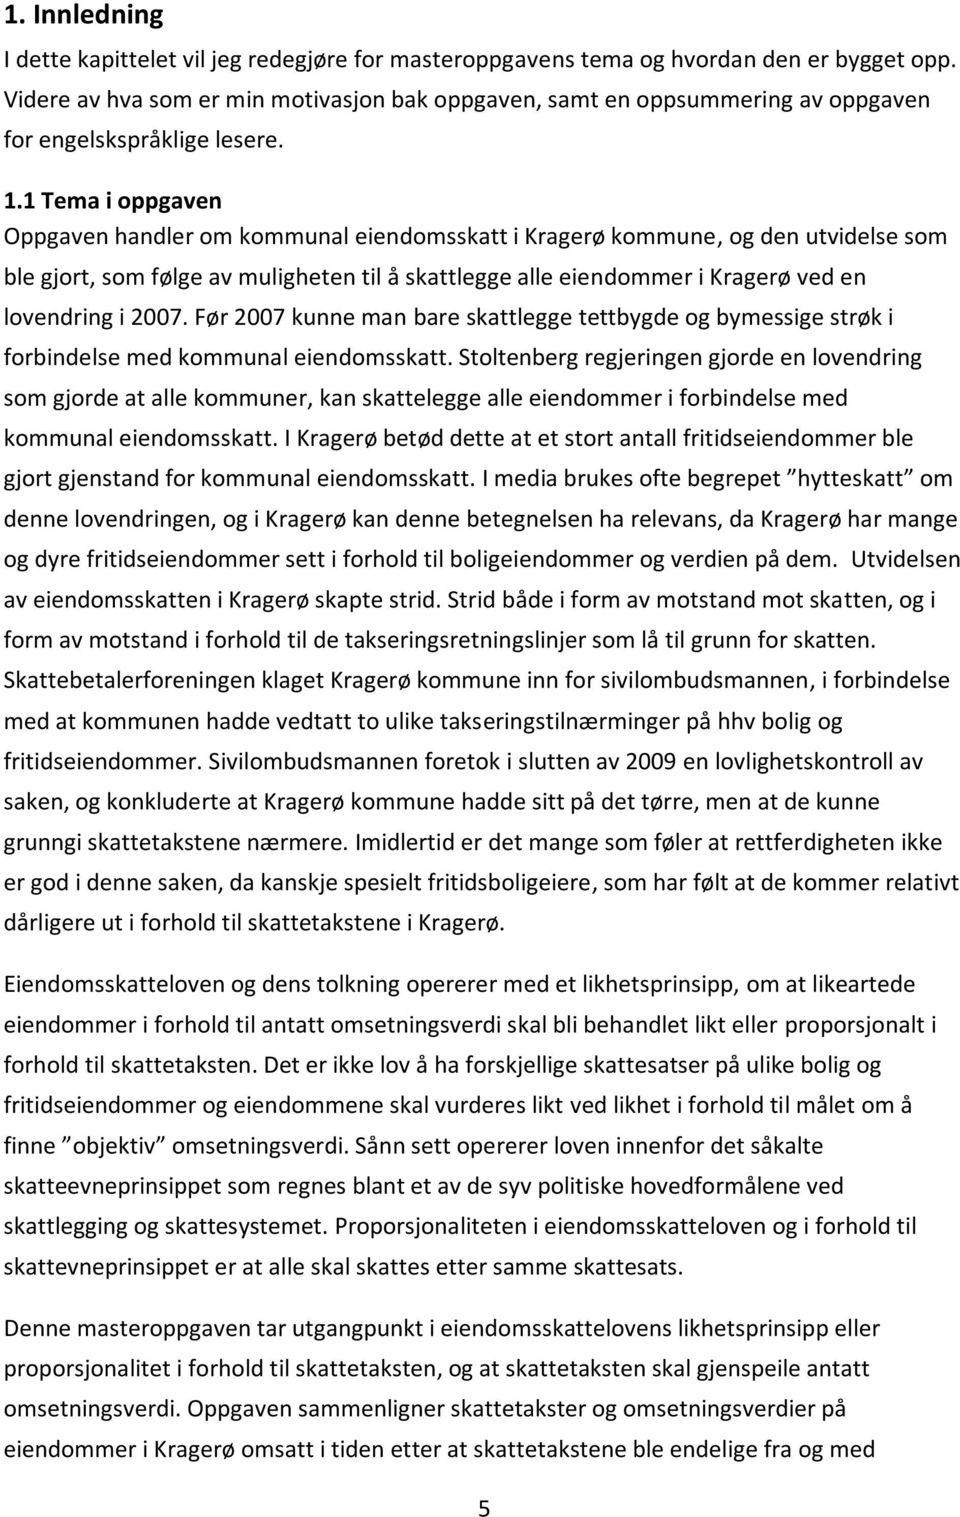 1 Tema i oppgaven Oppgaven handler om kommunal eiendomsskatt i Kragerø kommune, og den utvidelse som ble gjort, som følge av muligheten til å skattlegge alle eiendommer i Kragerø ved en lovendring i